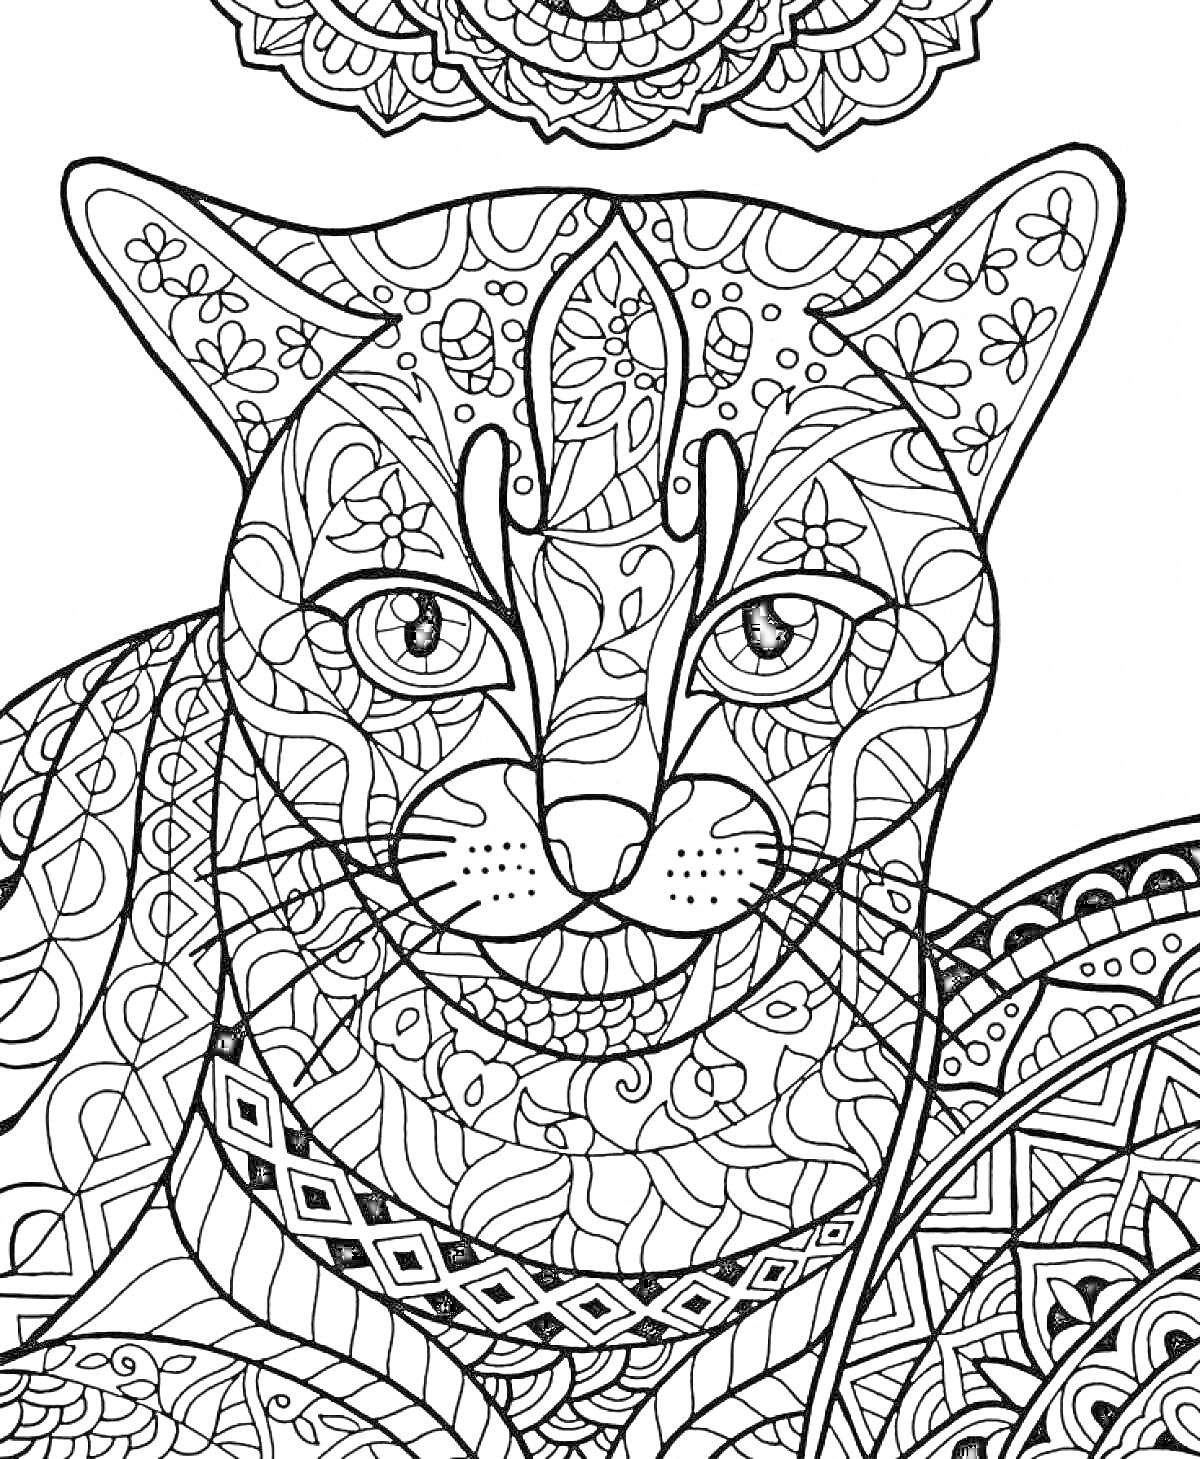 Раскраска Антистресс раскраска с детализированной кошкой, цветочными узорами и геометрическими элементами